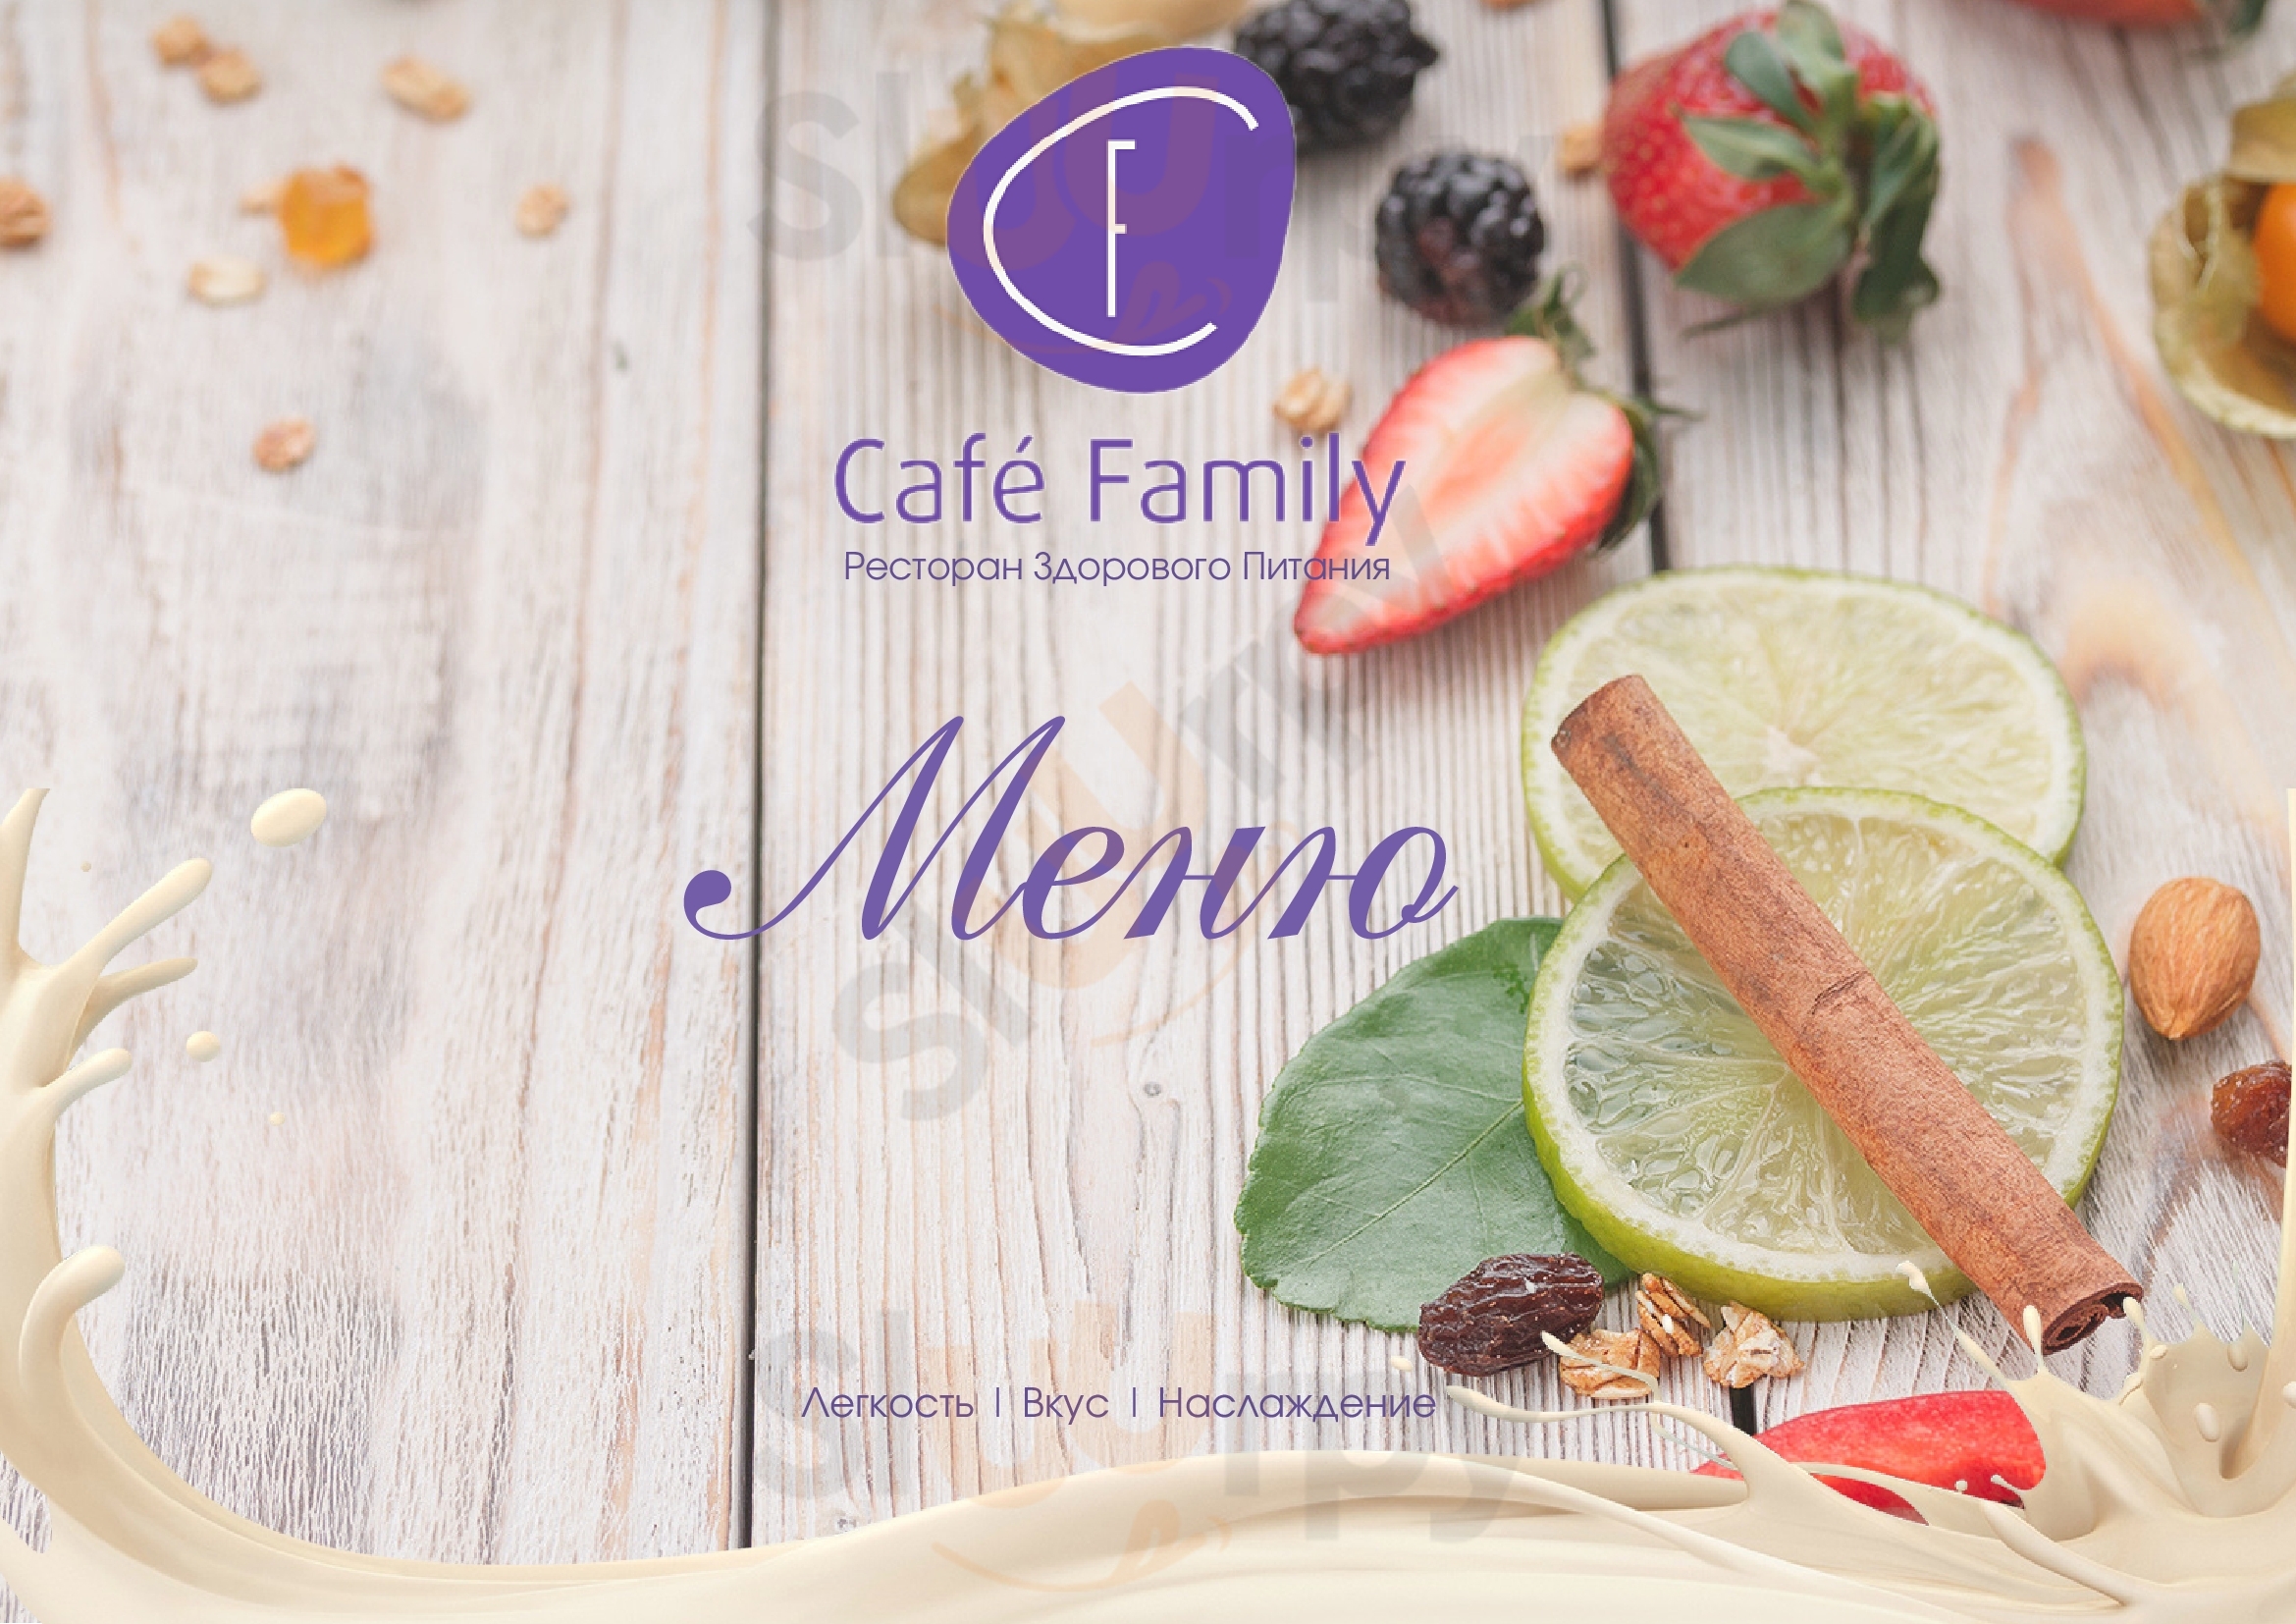 Cafe Family Тверь Menu - 1